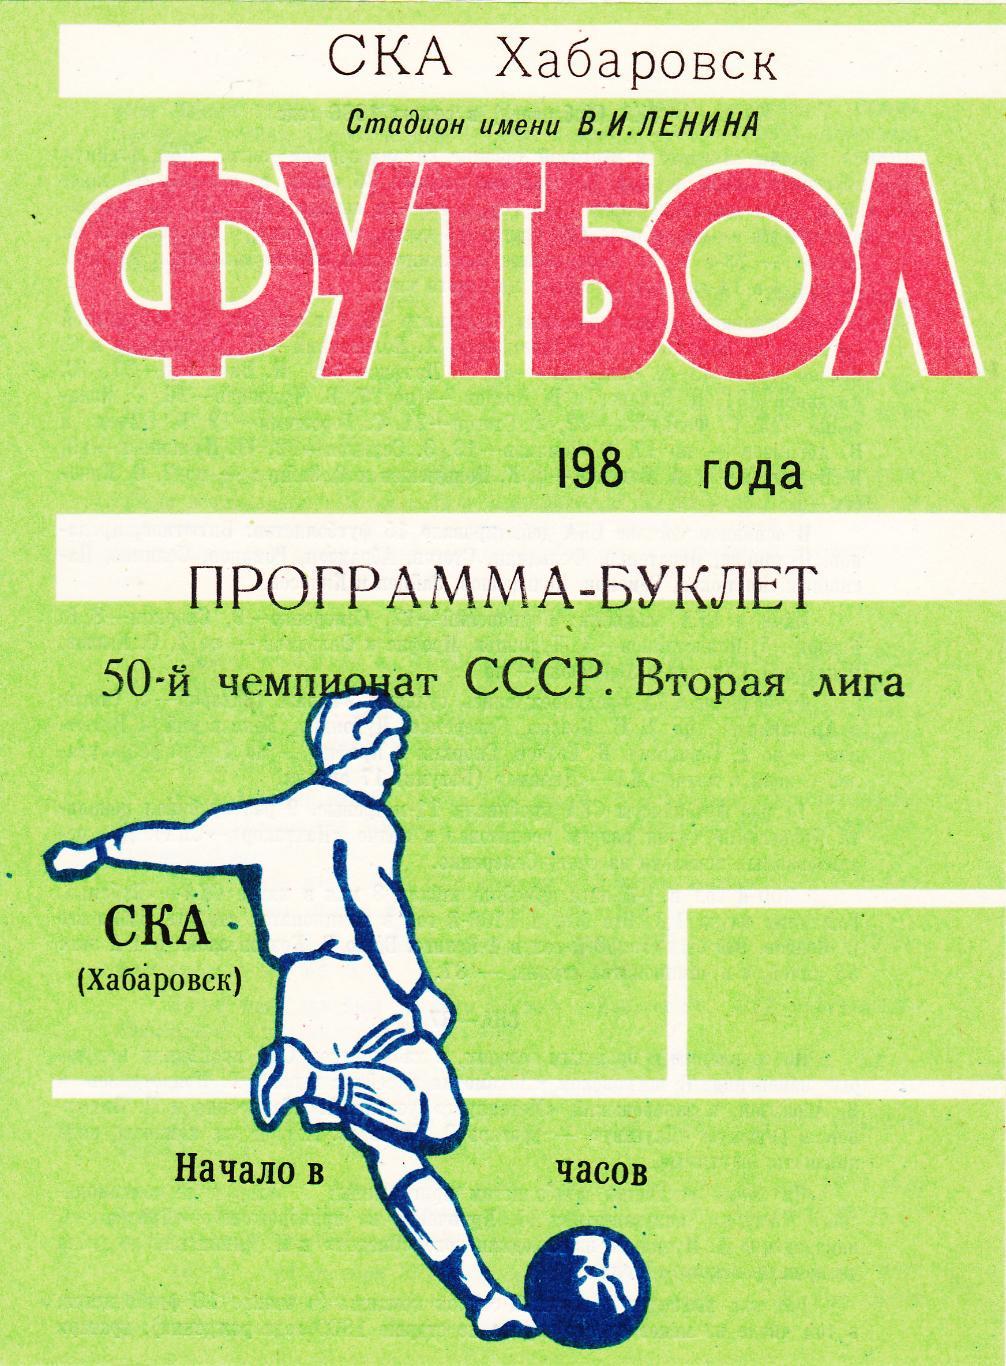 СКА (Хабаровск) 1987 (Буклет)